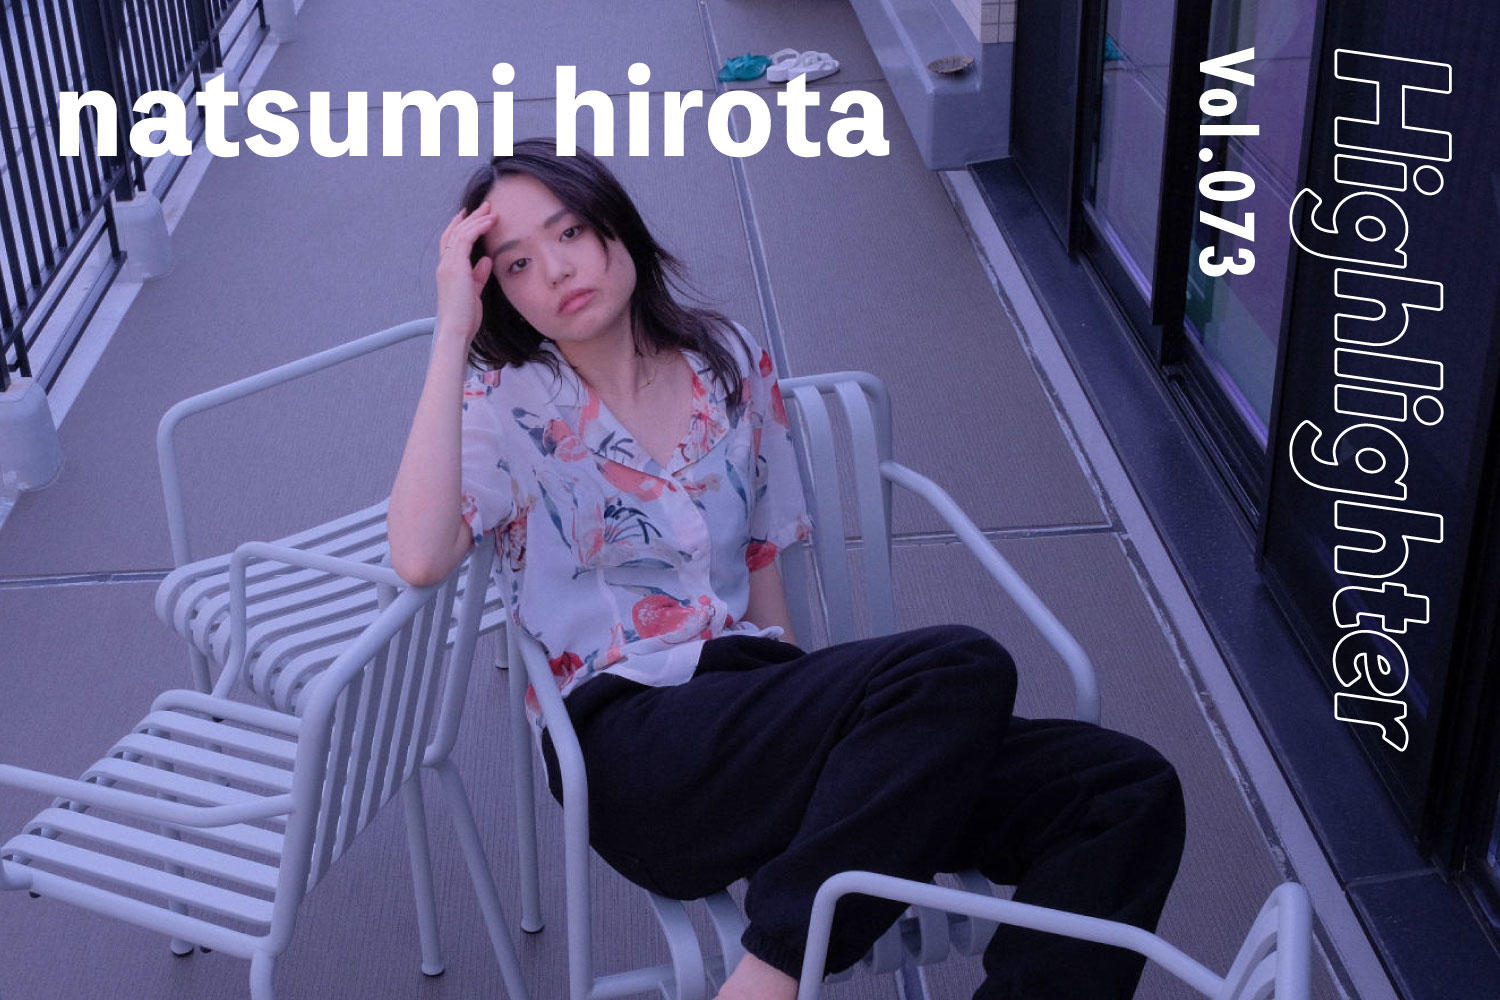  脳内イメージを加速させるエレクトロミュージック「natsumi hirota」-Highlighter Vol.073-